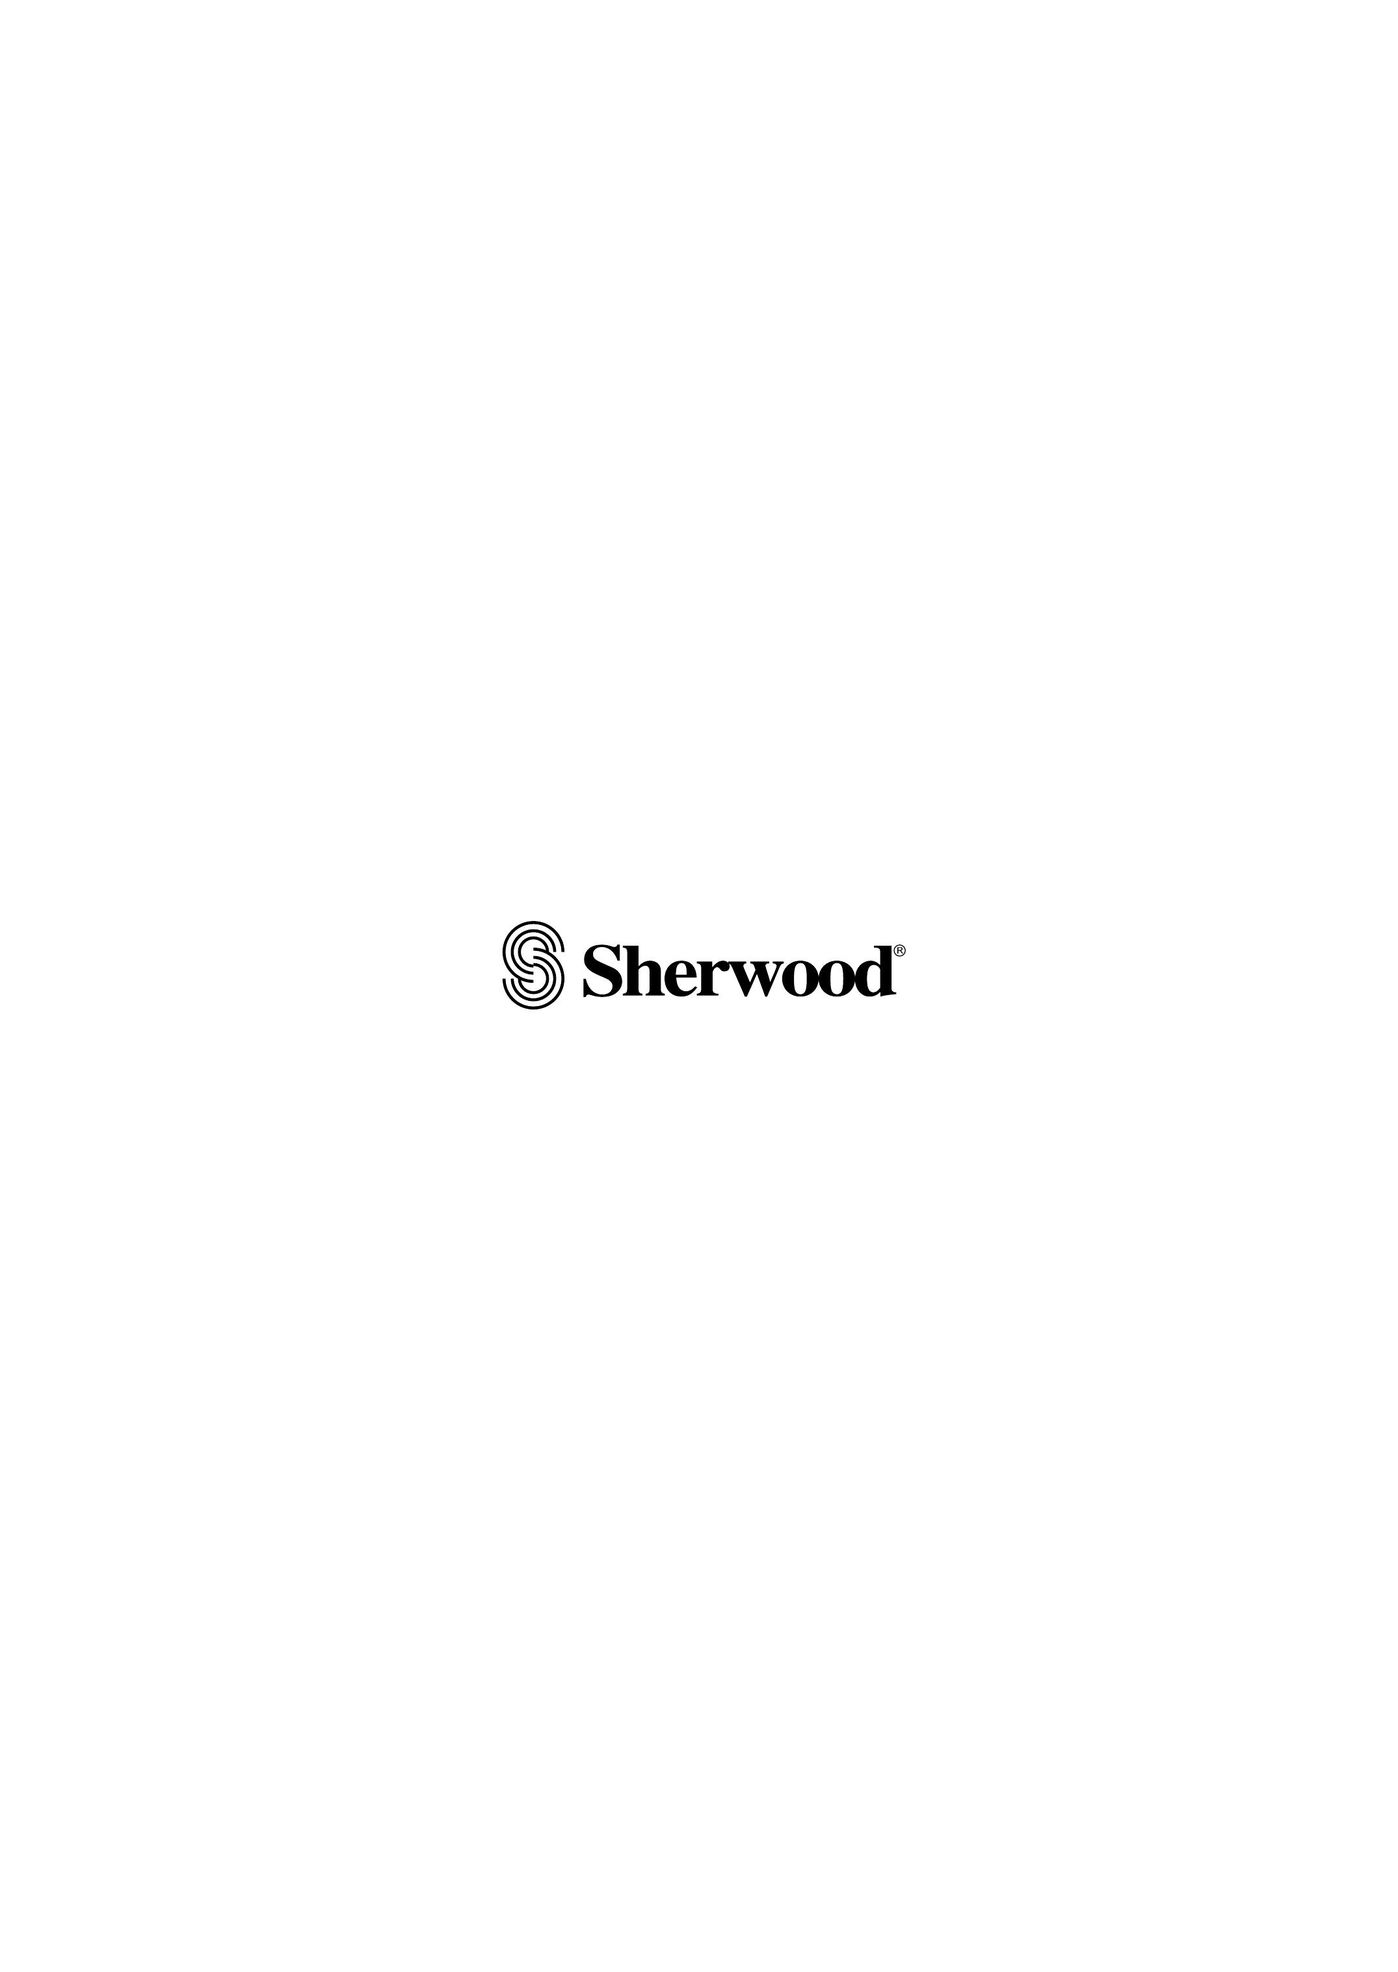 Sherwood VD-4500 DVD Player User Manual